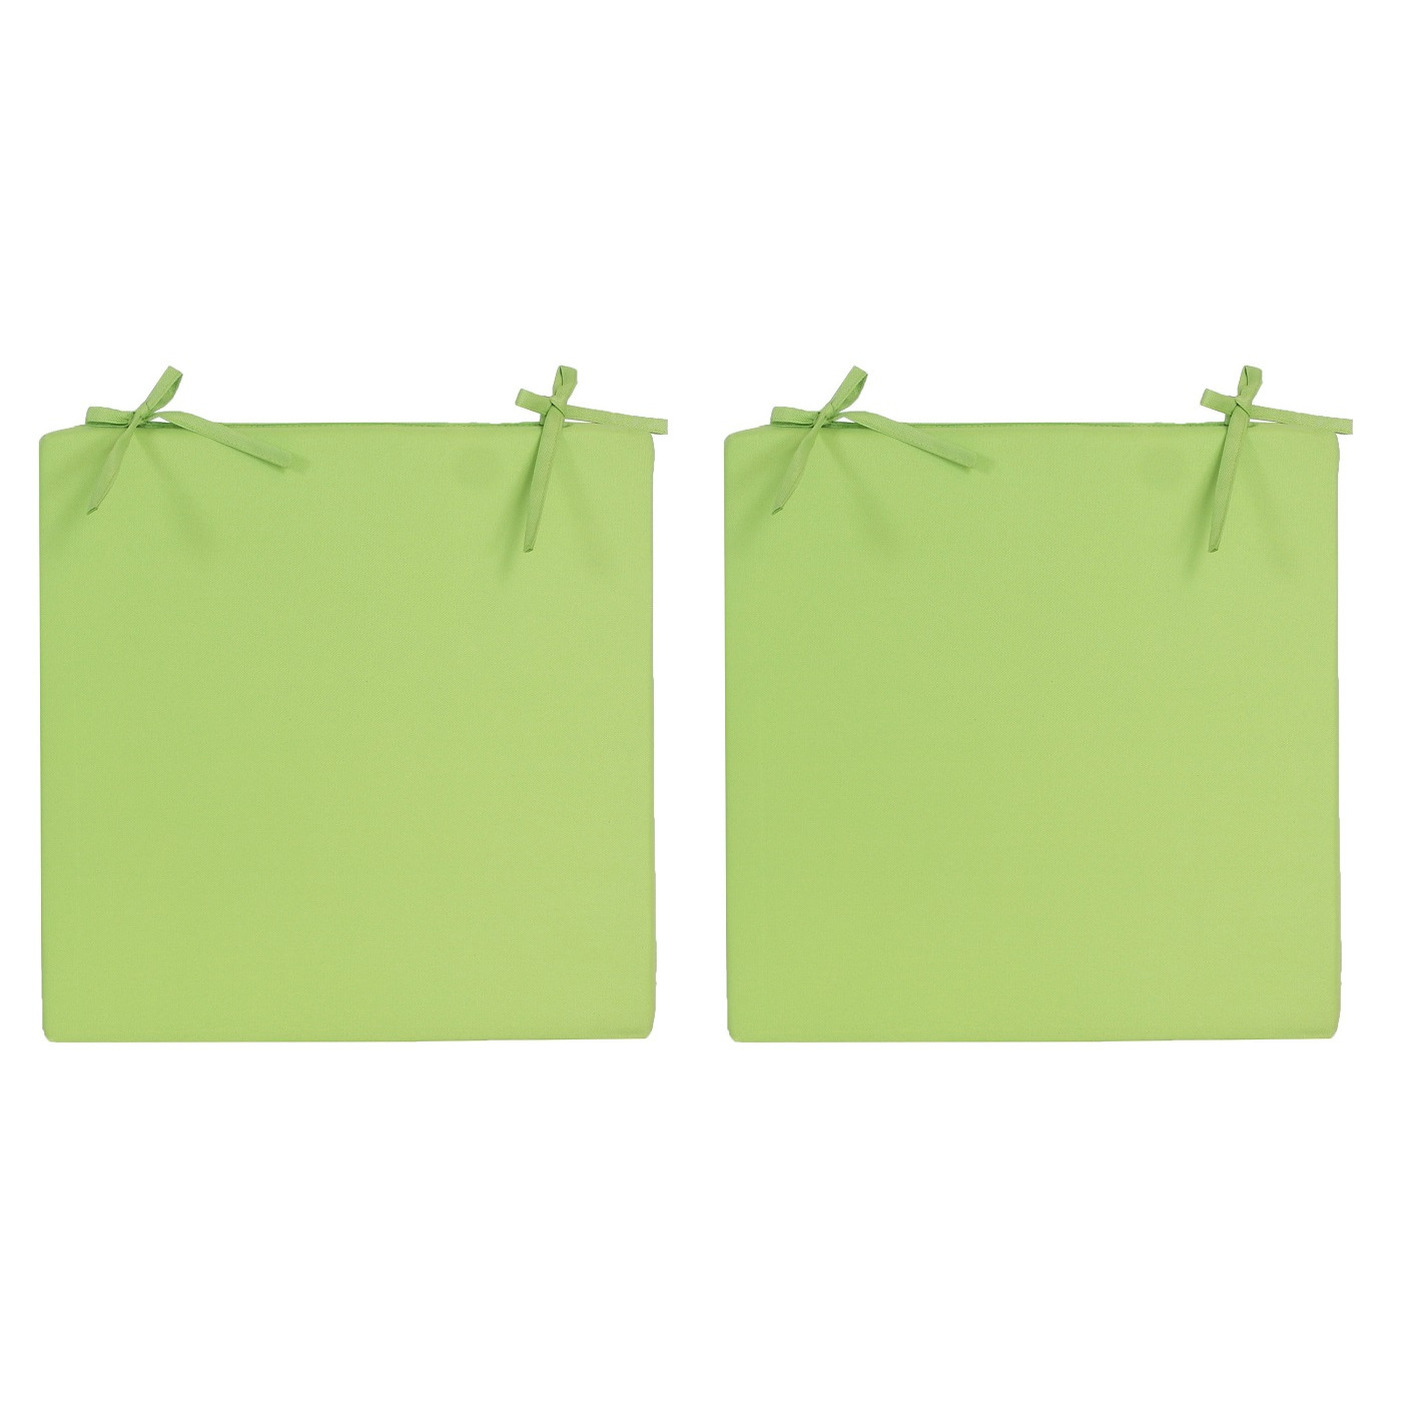 8x stuks stoelkussens voor binnen en buiten in de kleur groen 40 x 40 cm